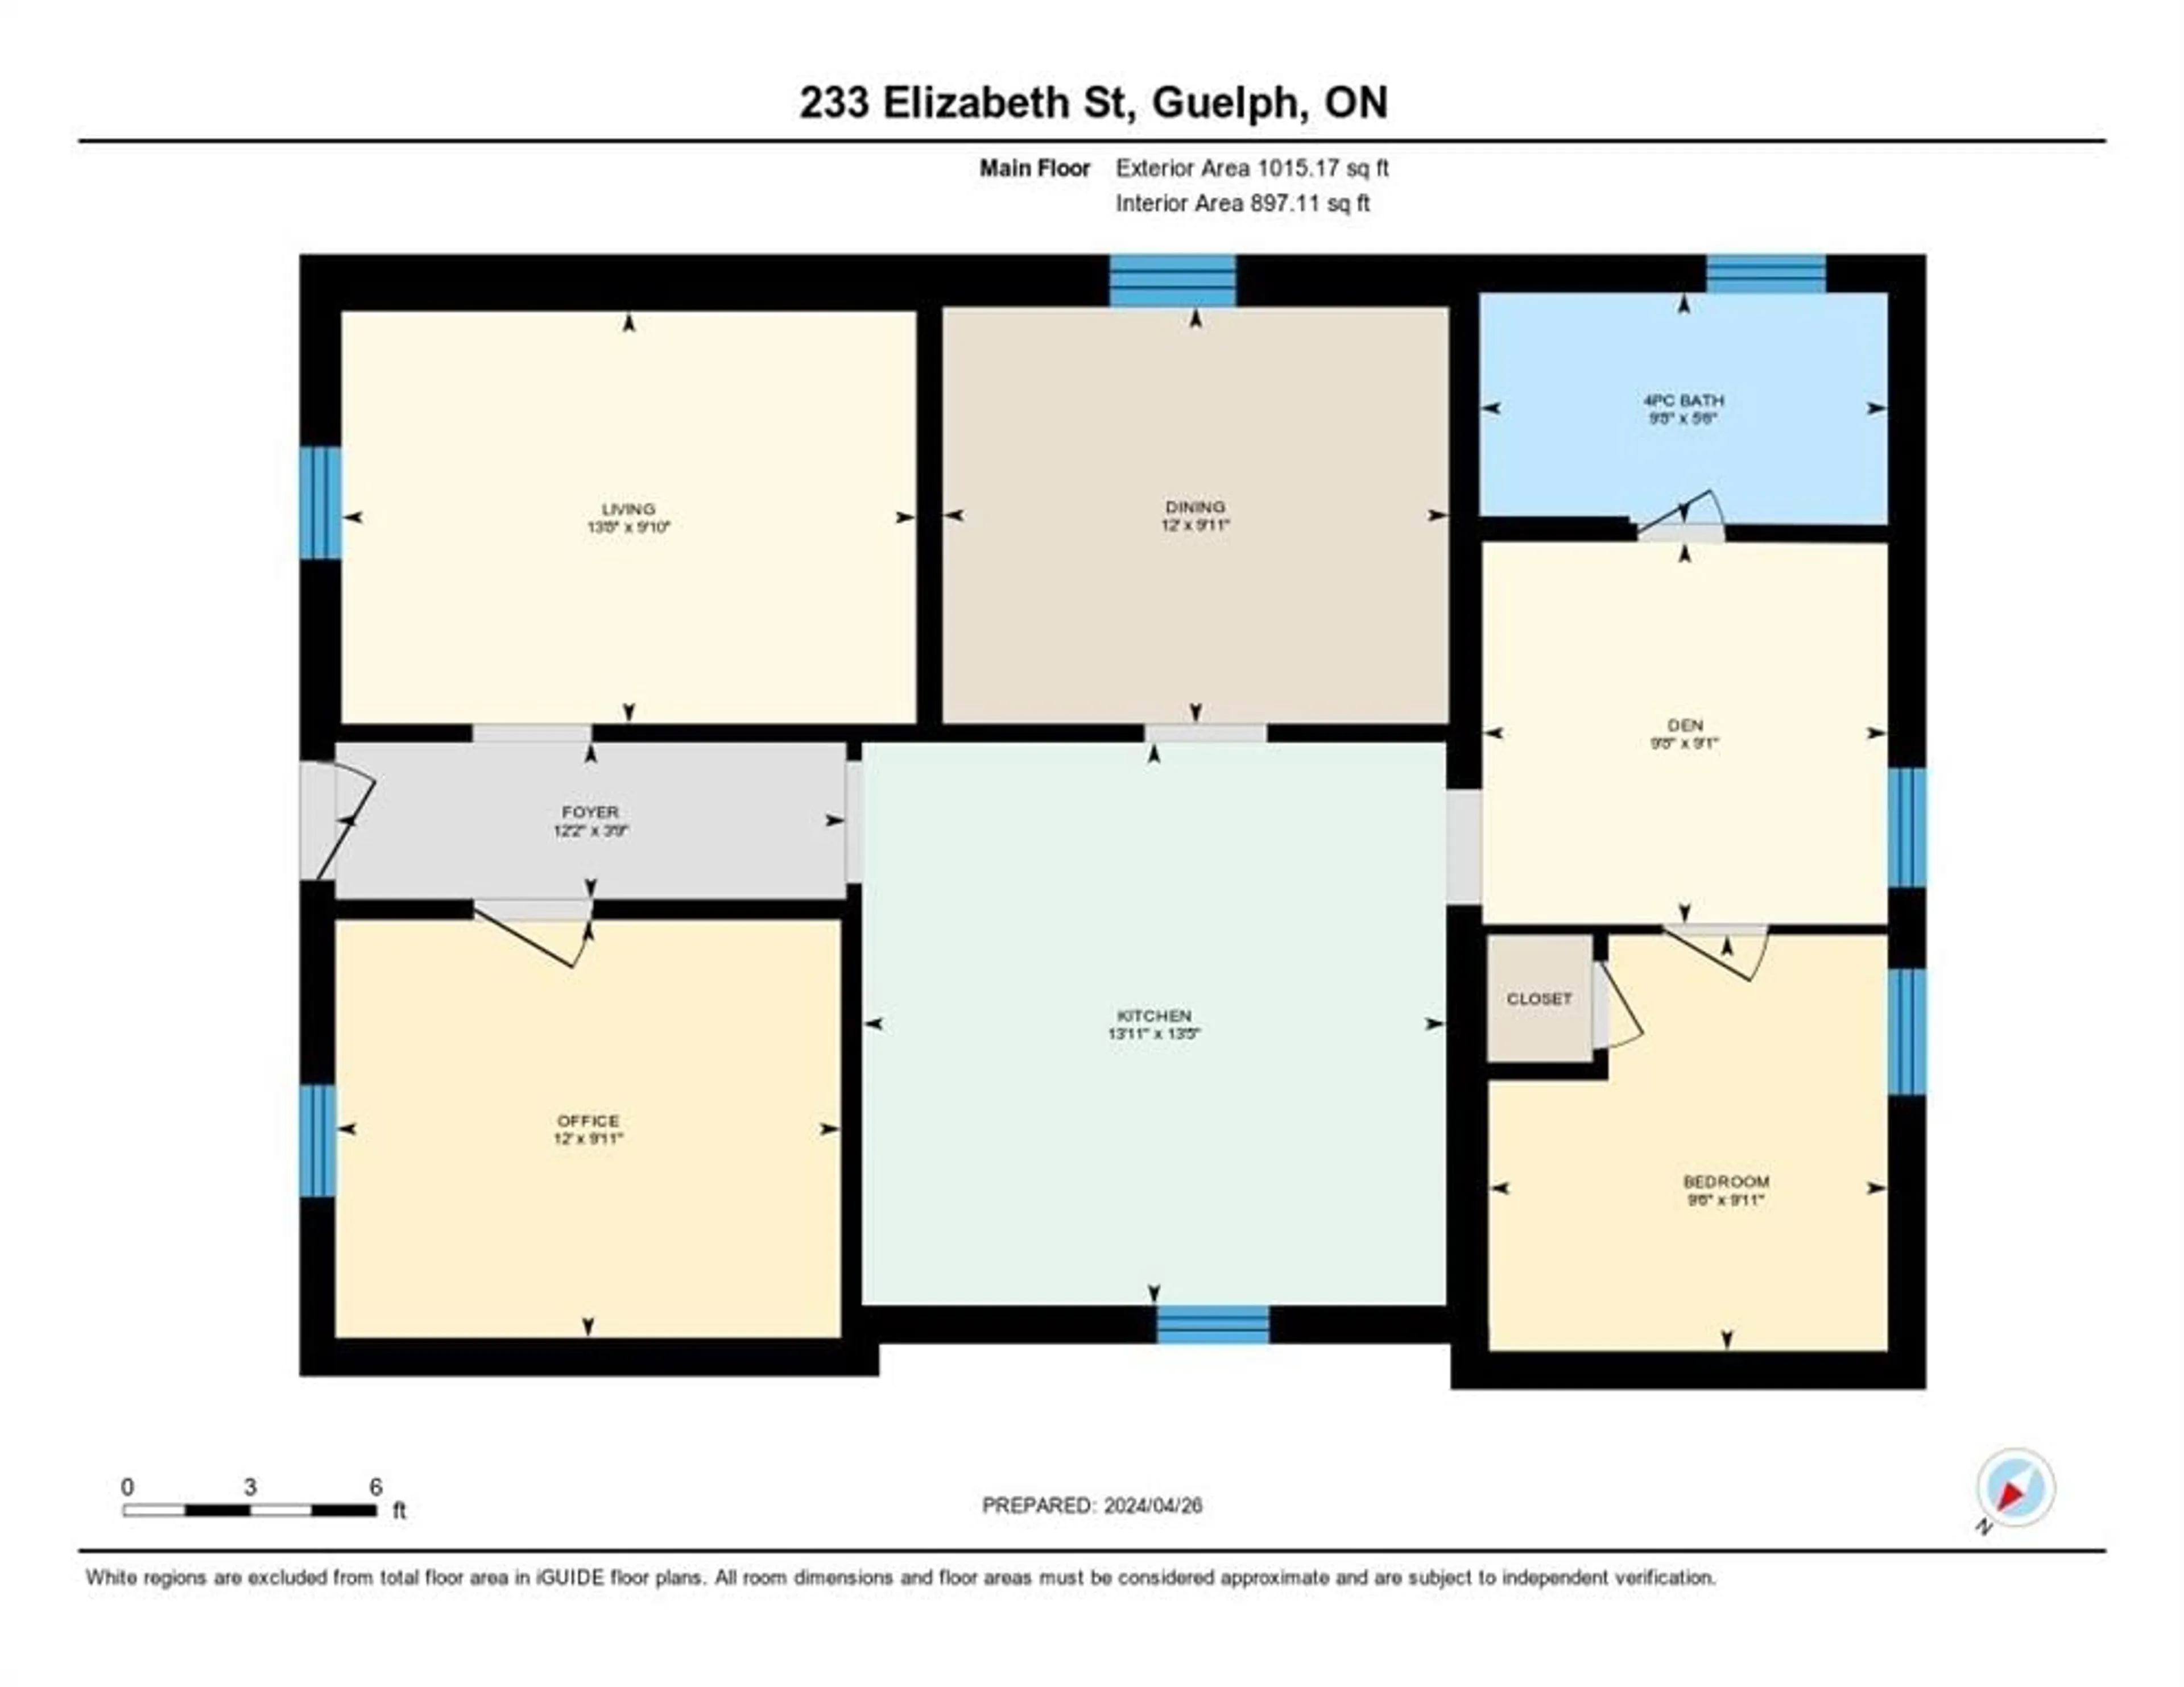 Floor plan for 233 Elizabeth St, Guelph Ontario N1E 2X6